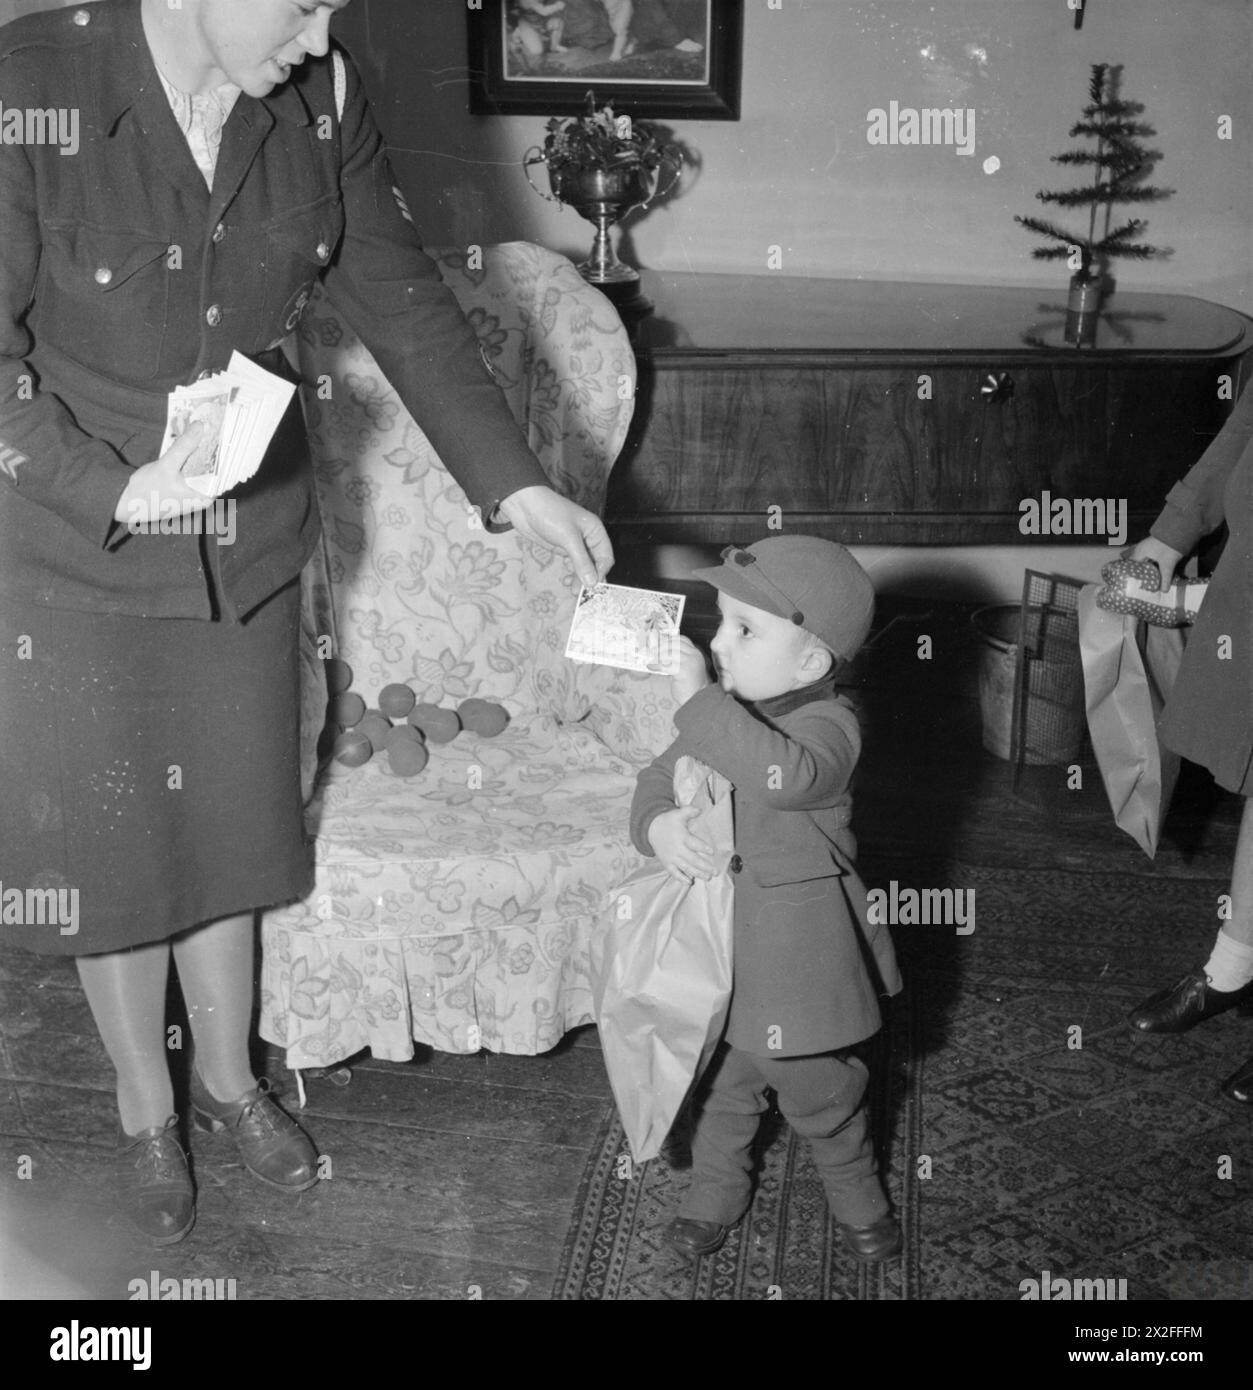 CADEAUX DE NOËL BWR DISTRIBUÉS AUX EAST ENDERS de LONDRES : AMERICAN AID TO THE CANNING TOWN SETTLEMENT, LONDRES, ANGLETERRE, Royaume-Uni, DÉCEMBRE 1944 - à la Settlement de Canning Town, Derek Cunningham reçoit une carte de Noël et un timbre d'épargne. En outre, il tient un sac en papier contenant un nouveau jouet et quelques bonbons, donnés comme cadeaux de Noël par l'Amérique par l'intermédiaire de la British War relief Society Banque D'Images